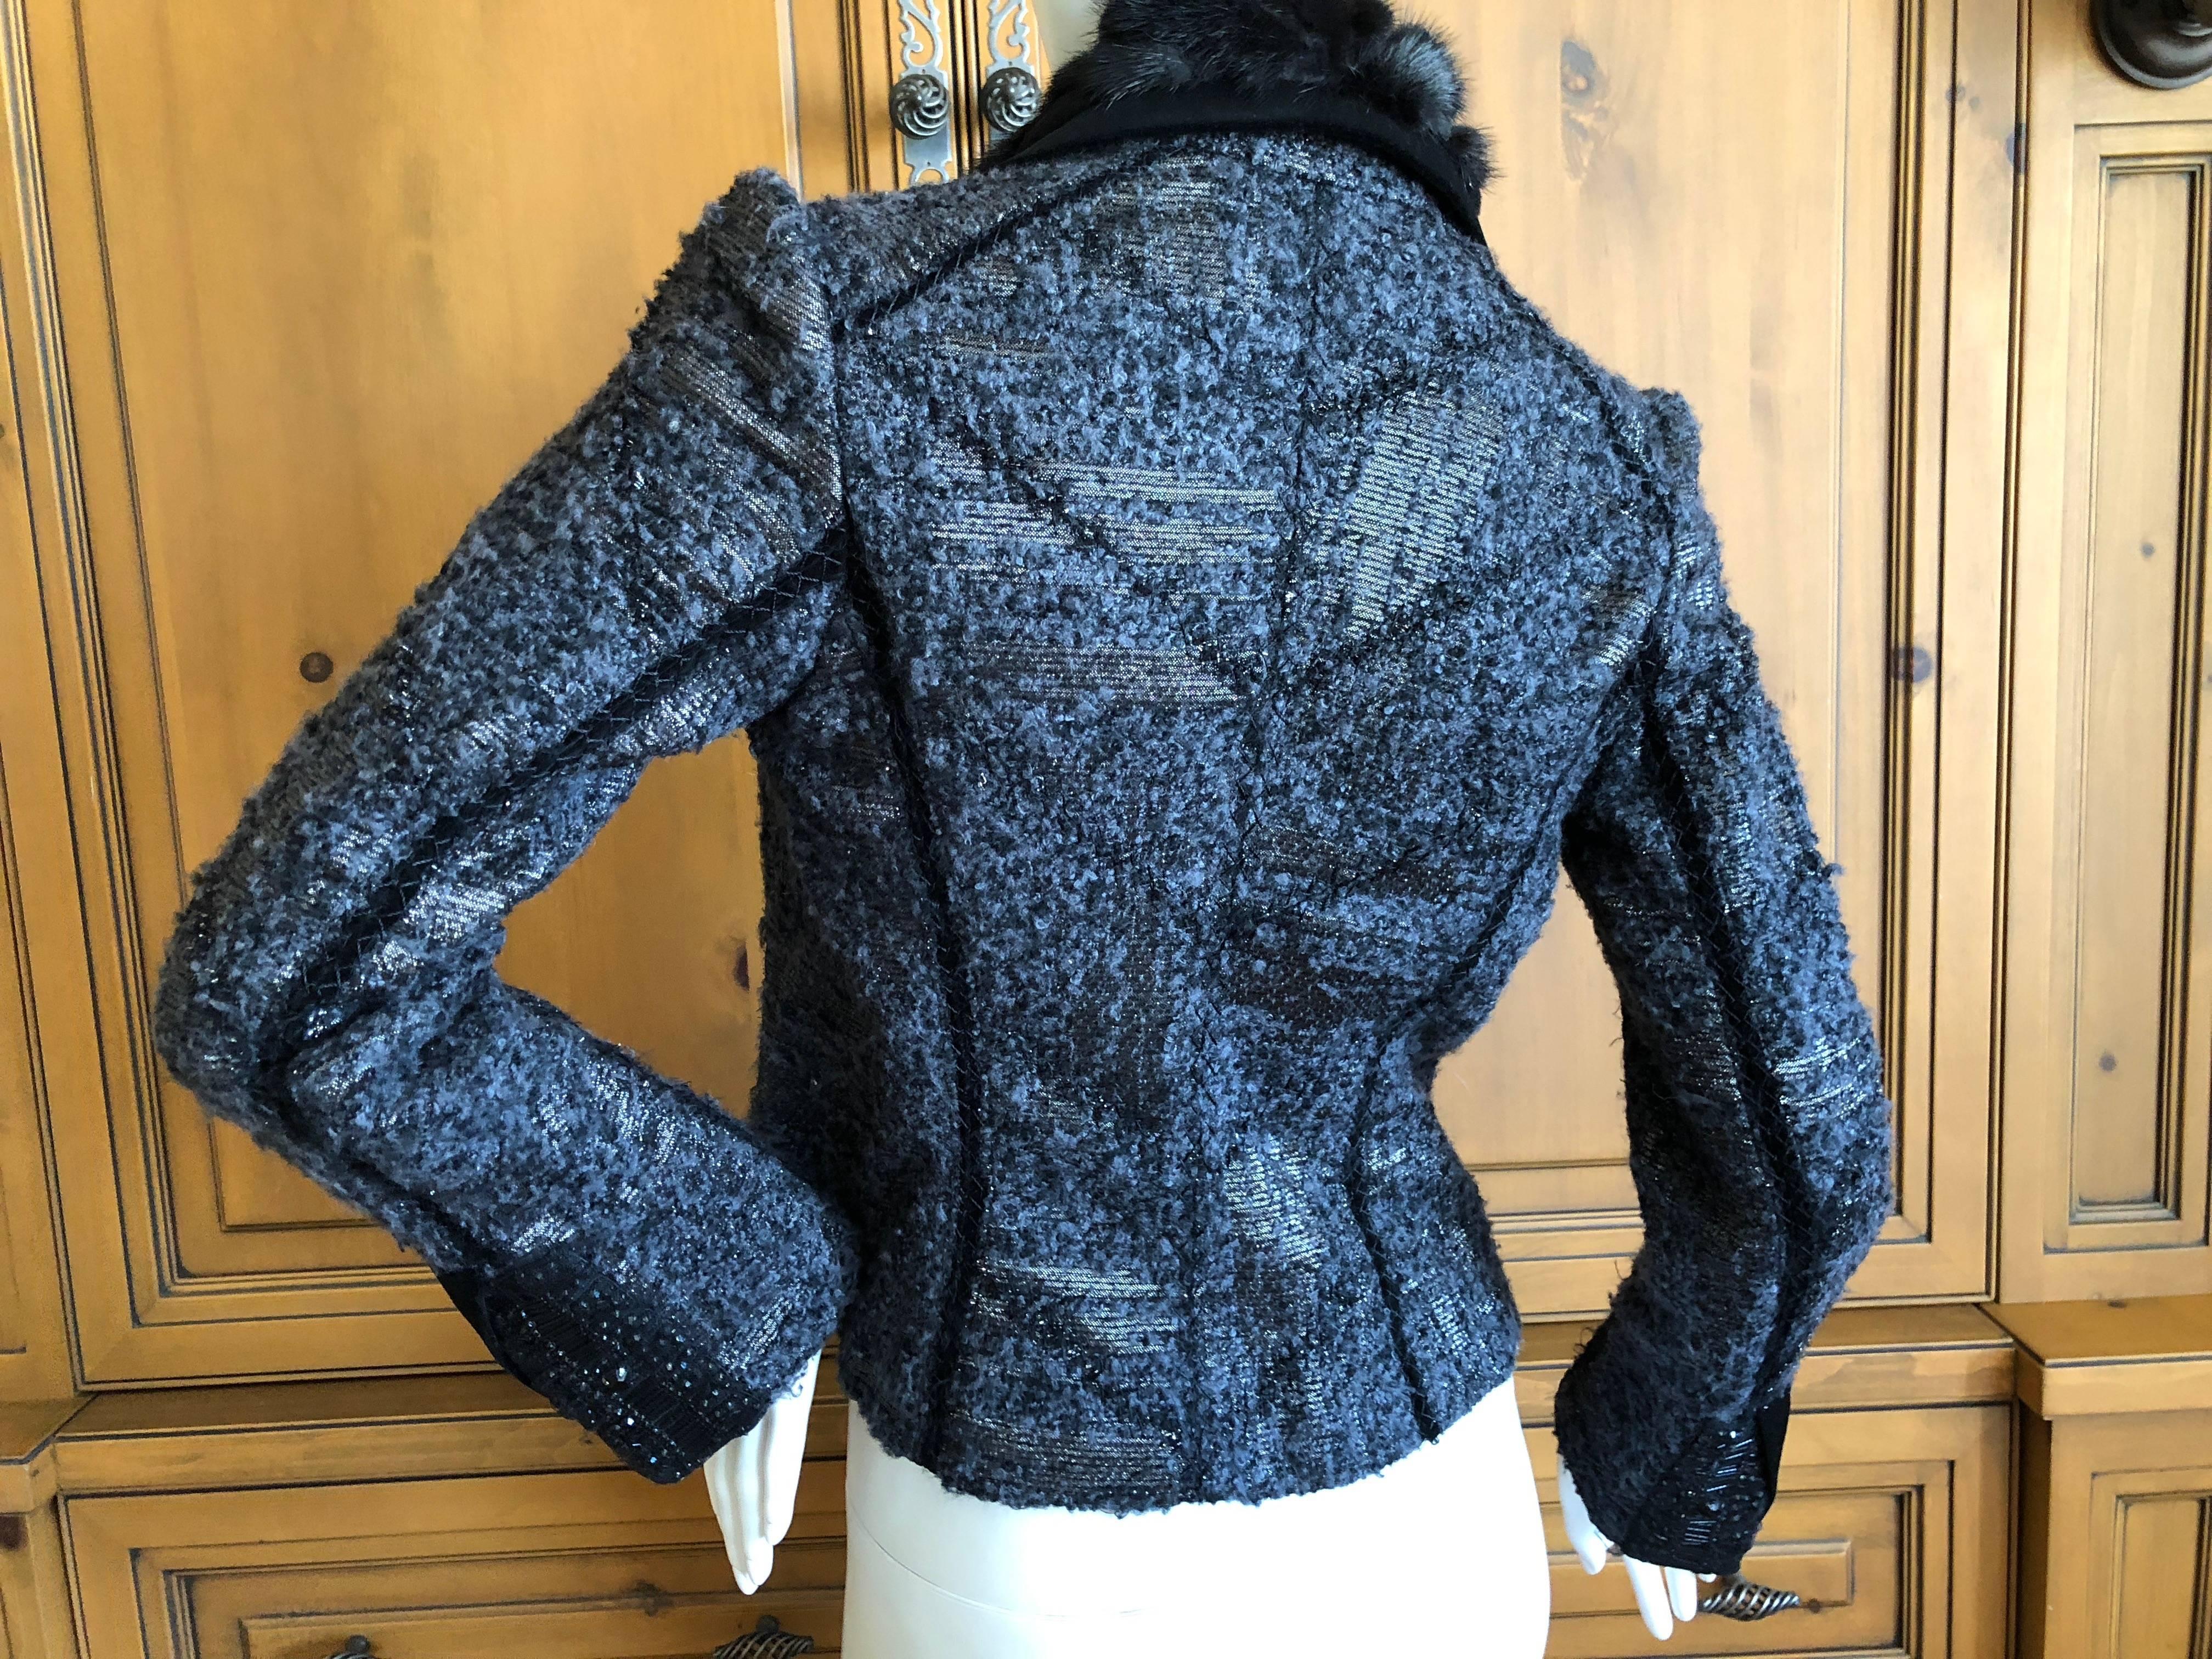 J. Mendel Paris Bead Embellished Tweed Belted Jacket with Fur Collar and Belt.
Size S 
Bust 34